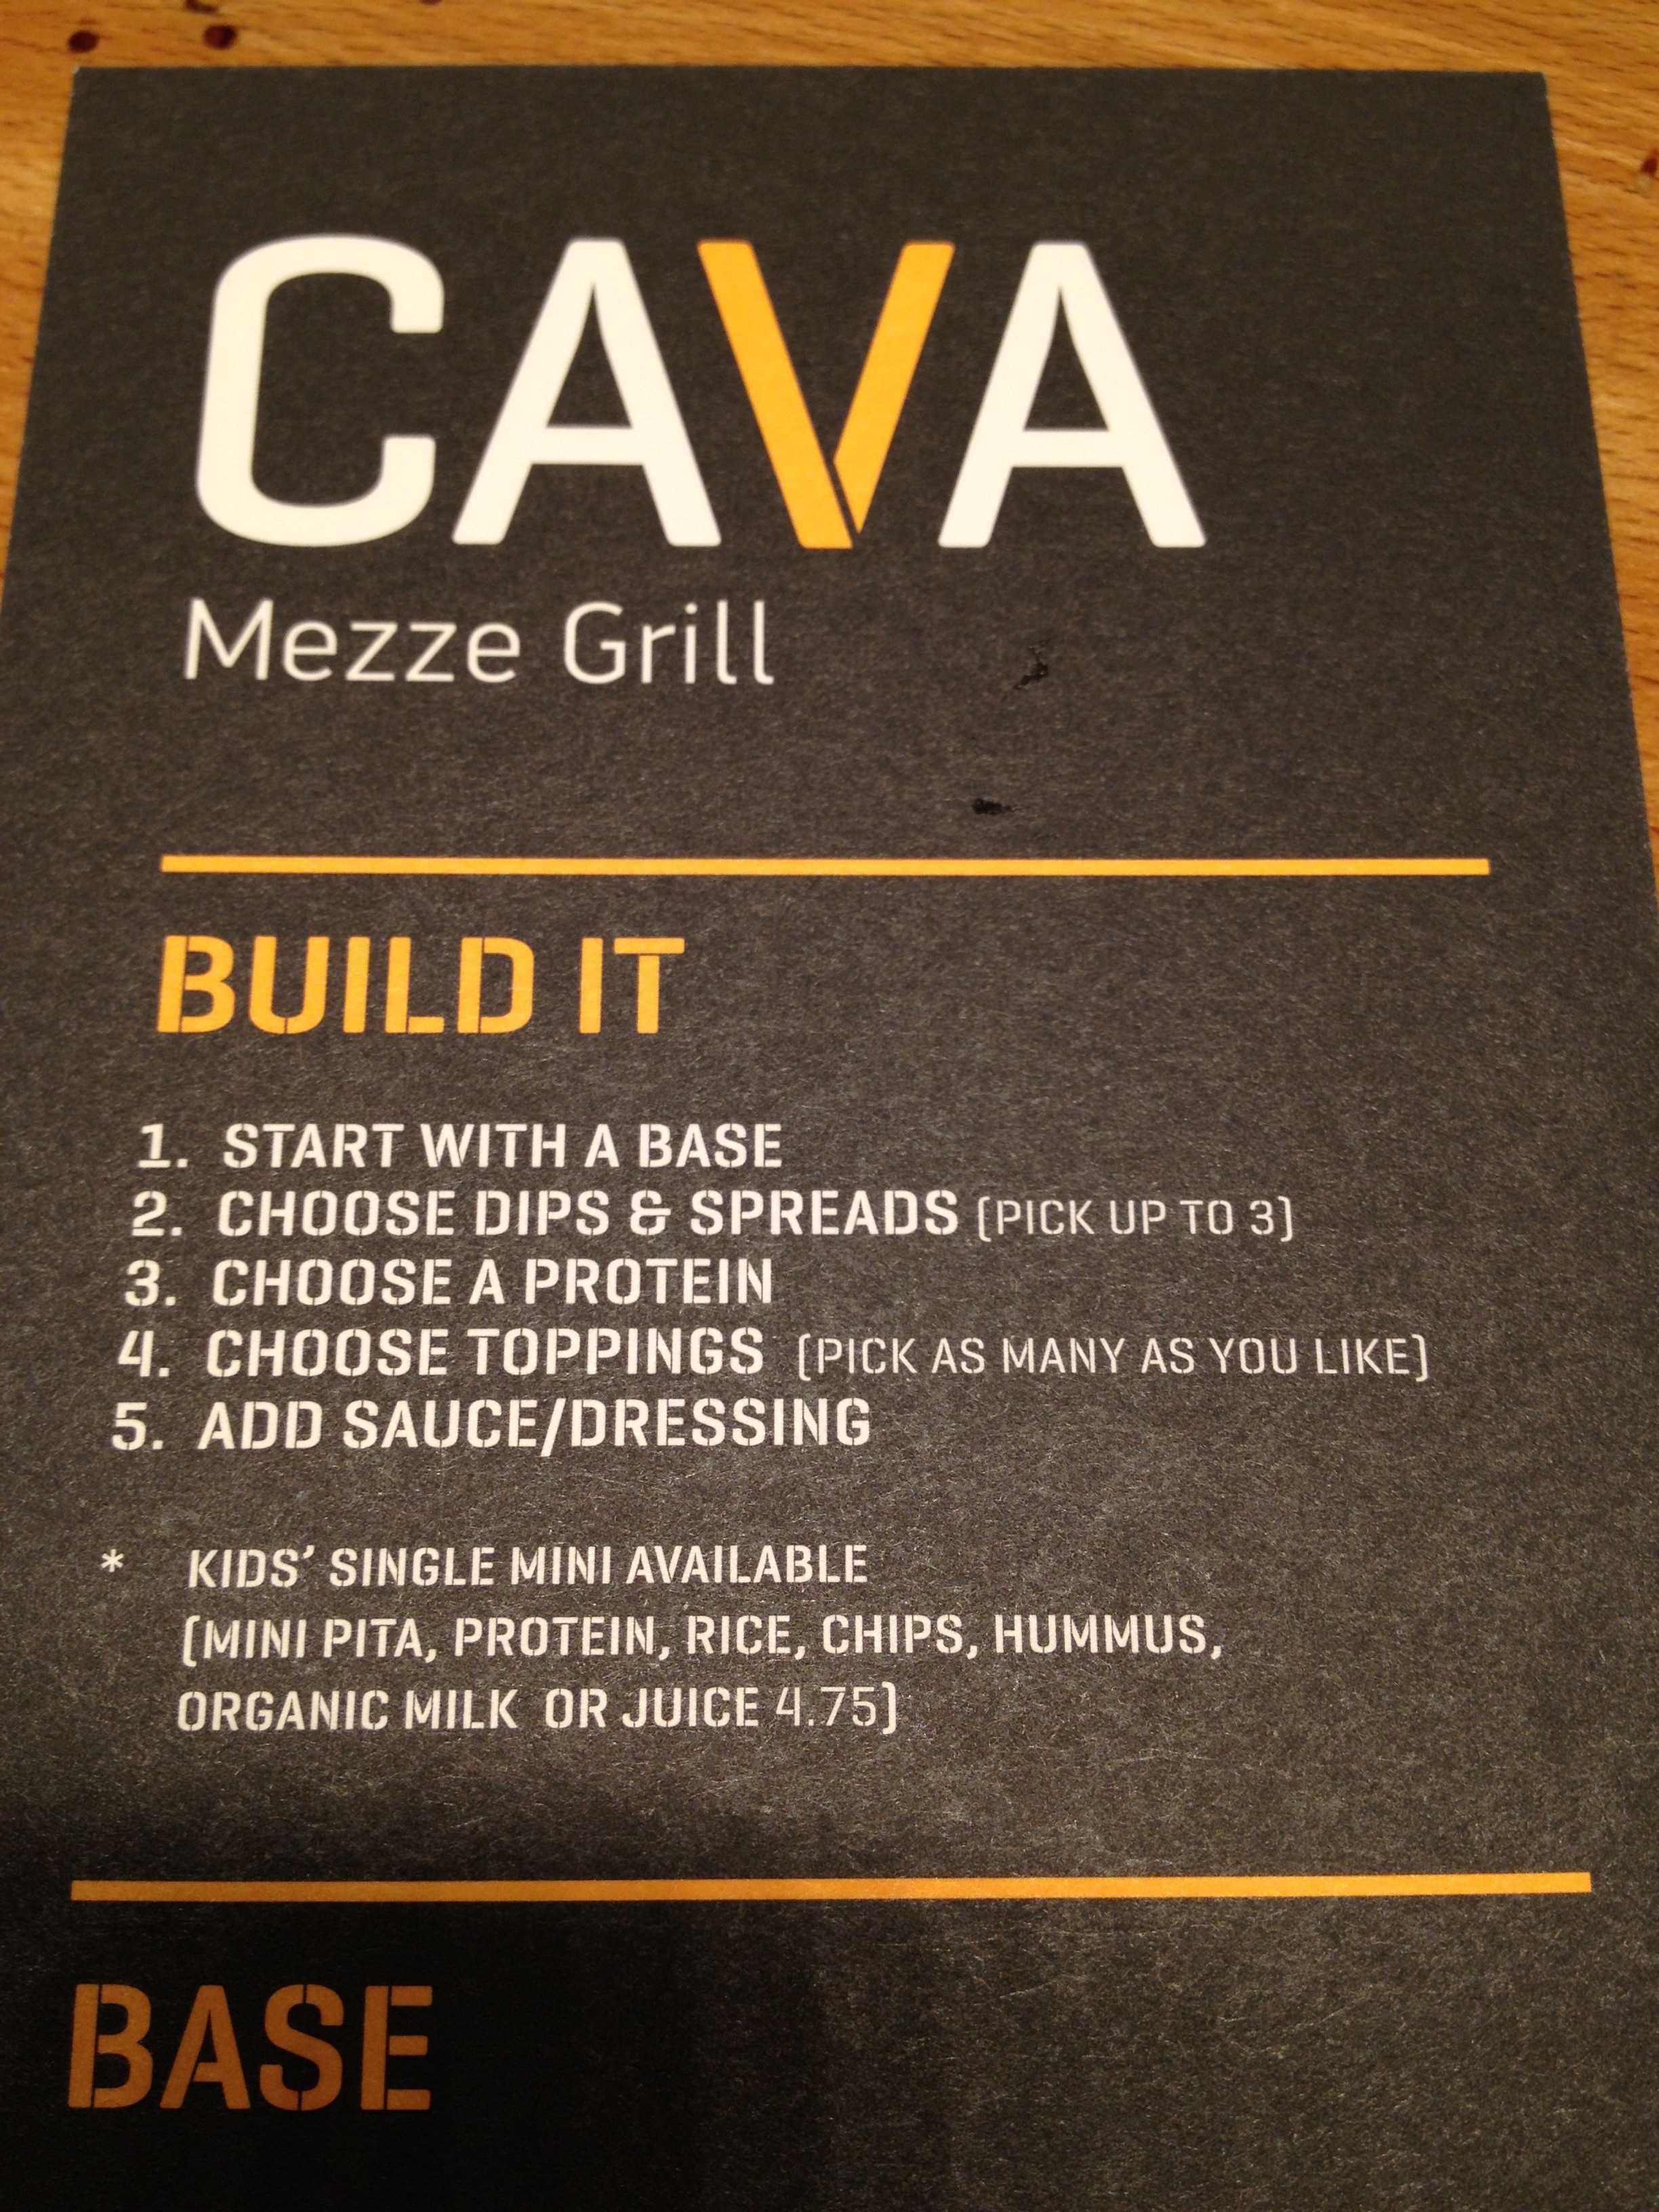 Cava Mezze Grill | Bon Appetit Bethesda2448 x 3264